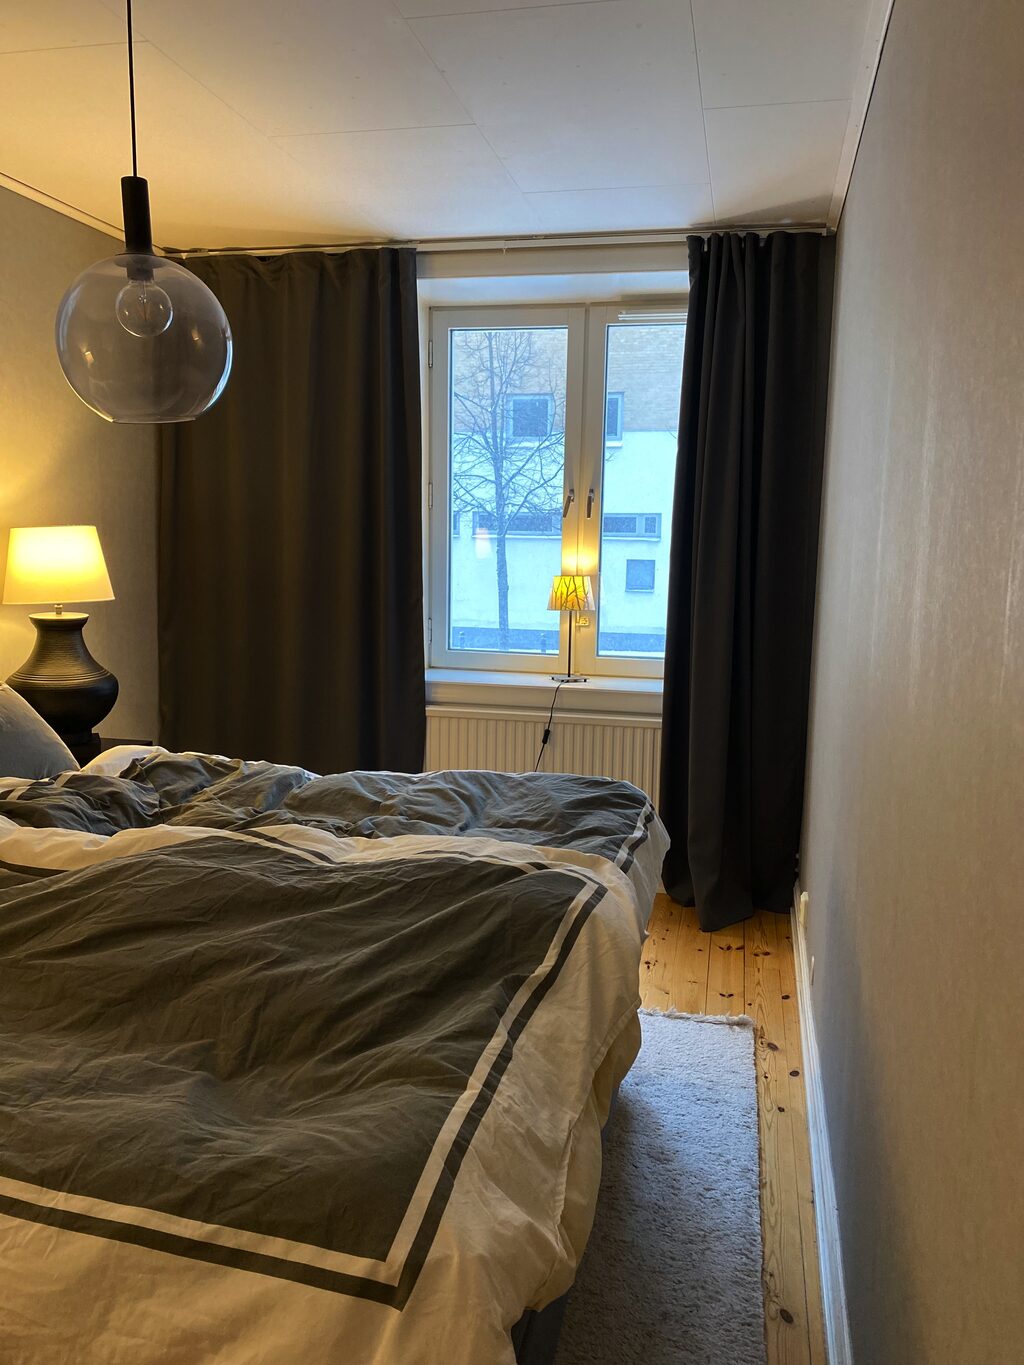 Lägenhetsbyte - Östgötagatan 22, 582 32 Linköping